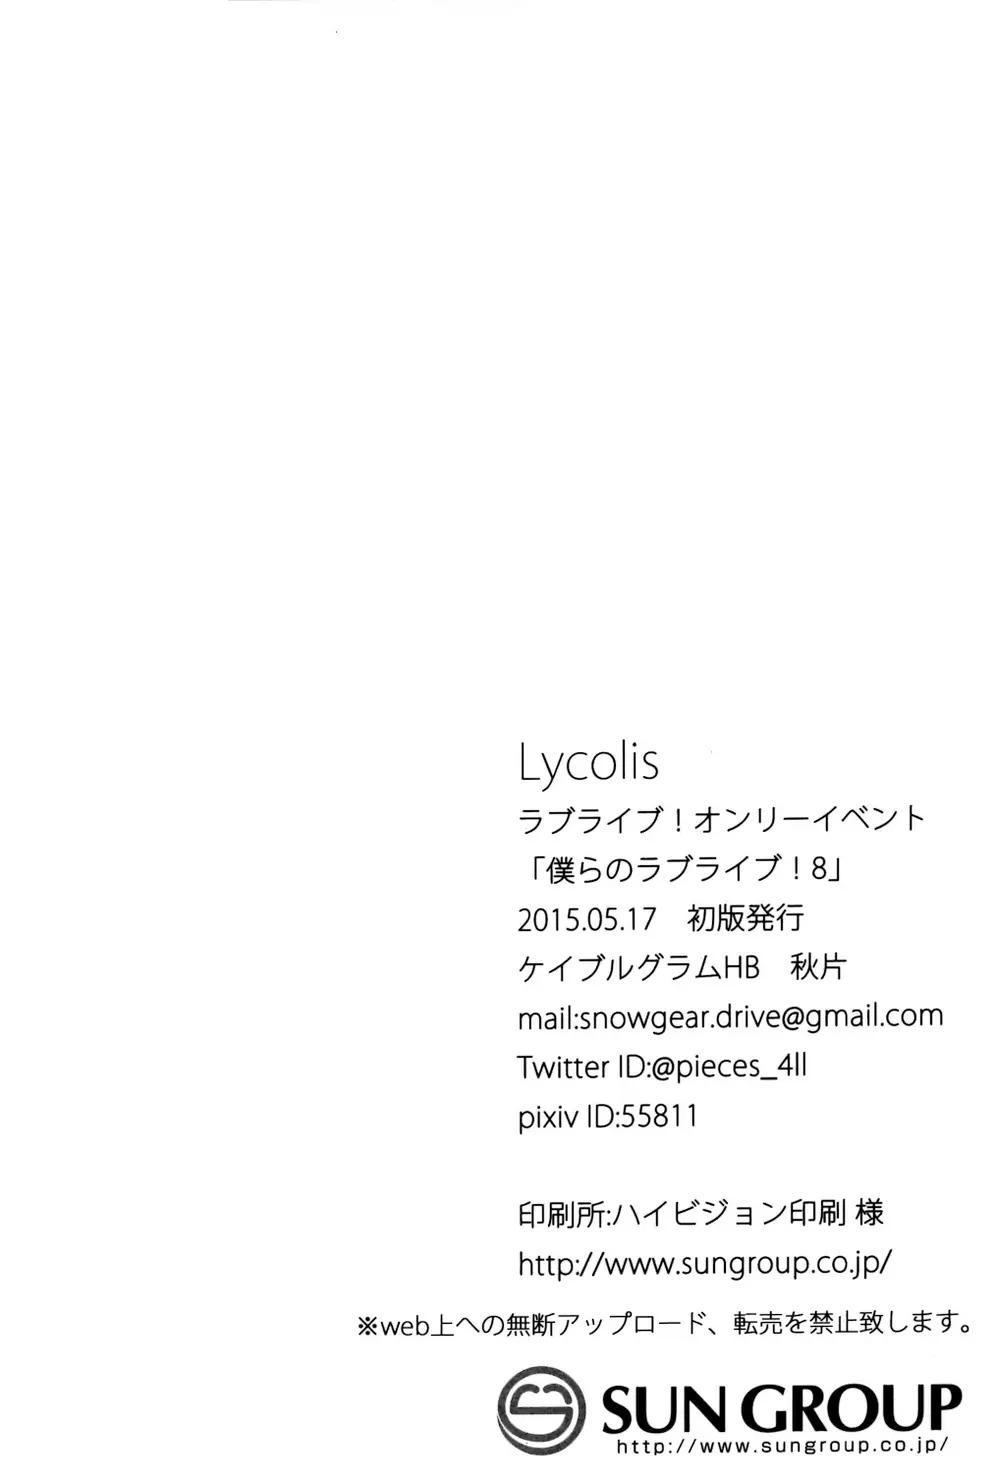 Lycolis33